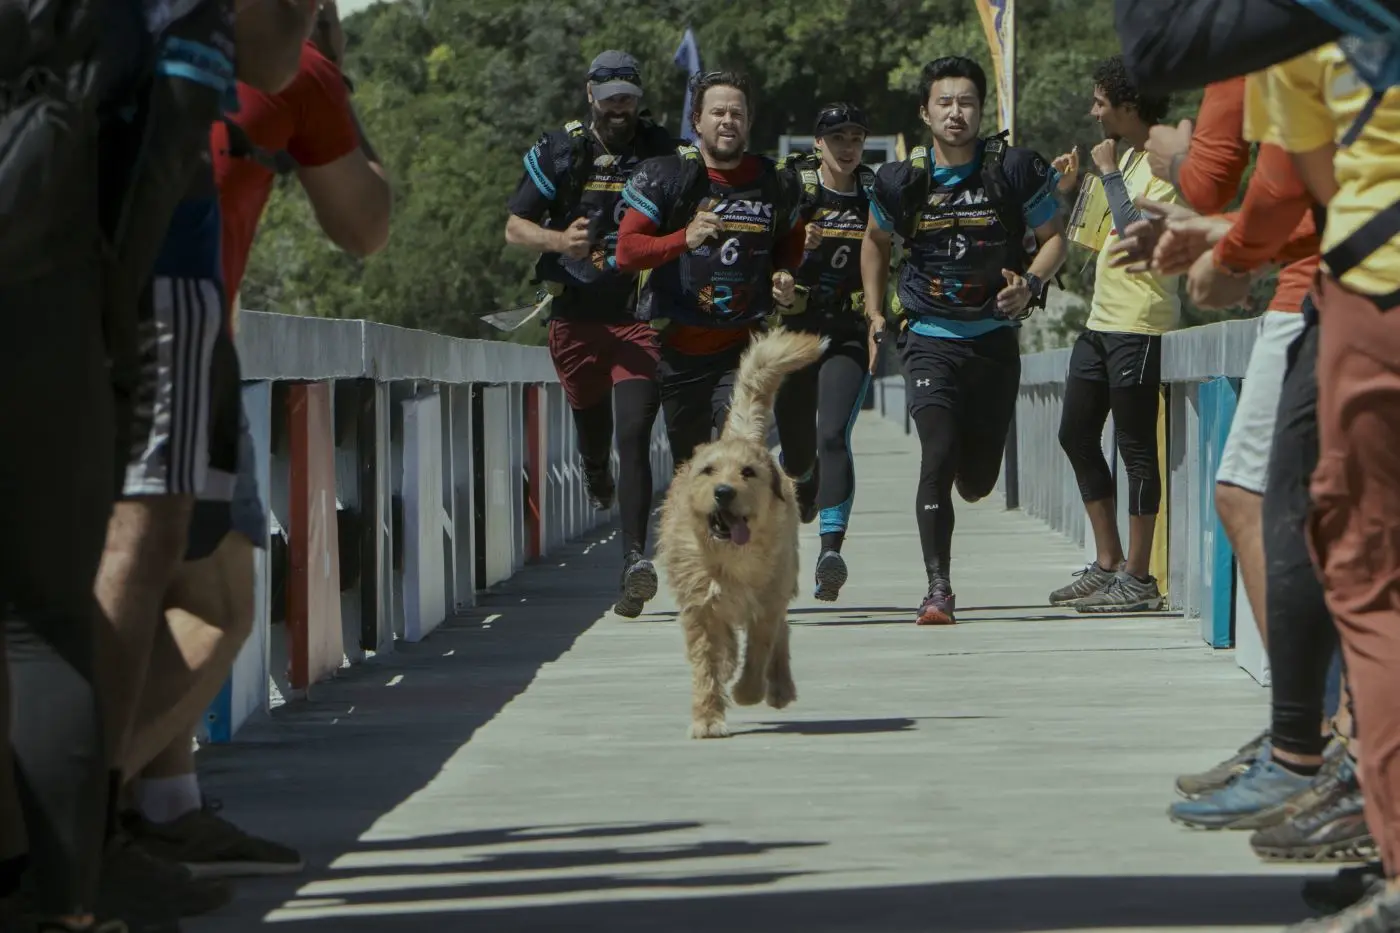 vier Athleten rennen eine Brücke entlang auf die Kamera zu, ihnen voran ein Hund